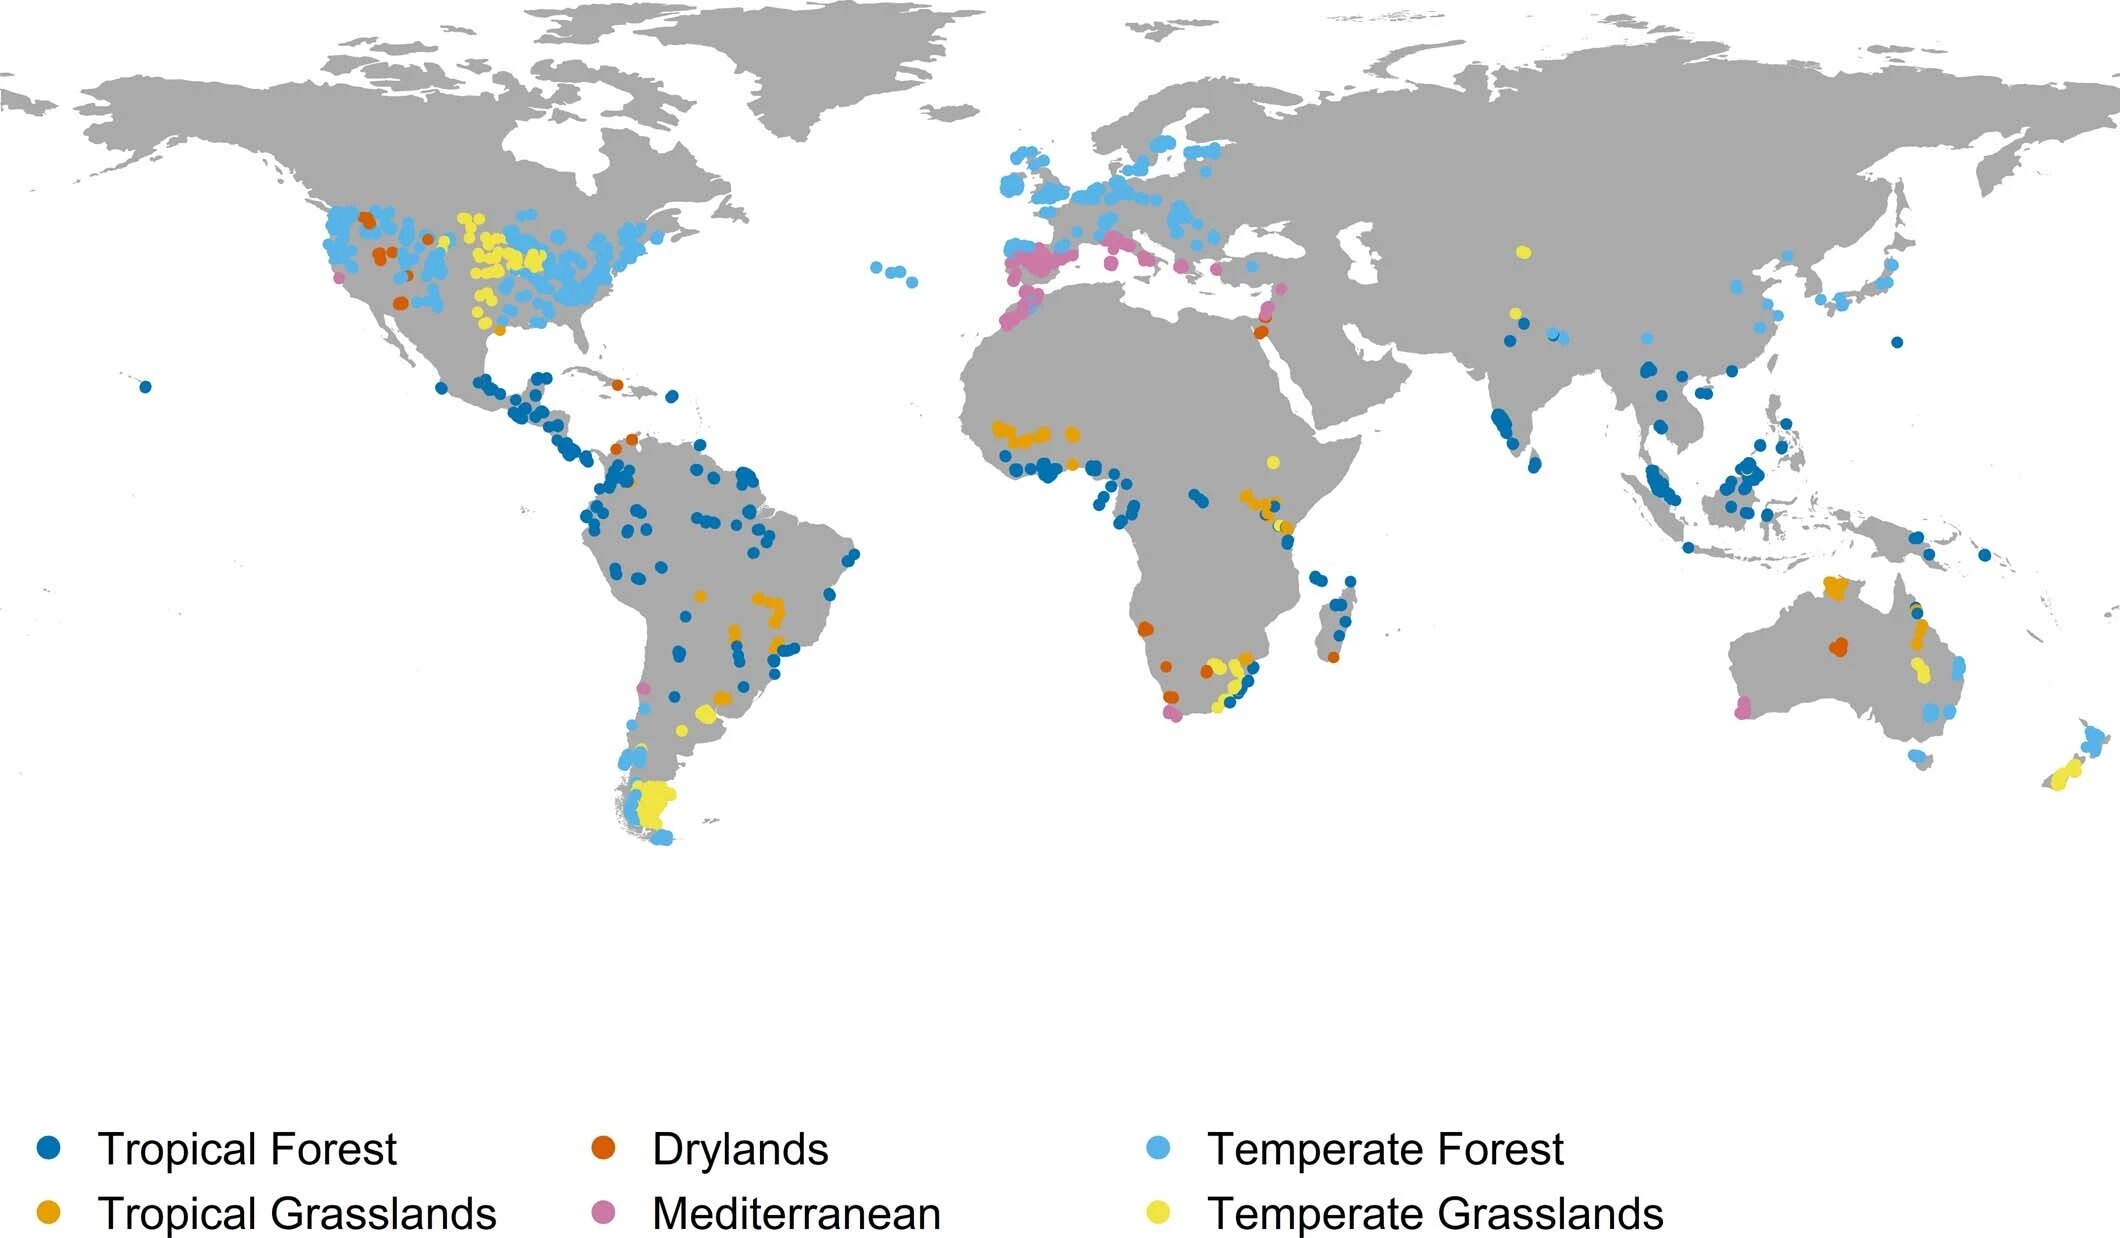 mapa con las zonas con más animales extintos del planeta. Destaca el mediterráneo y los trópicos